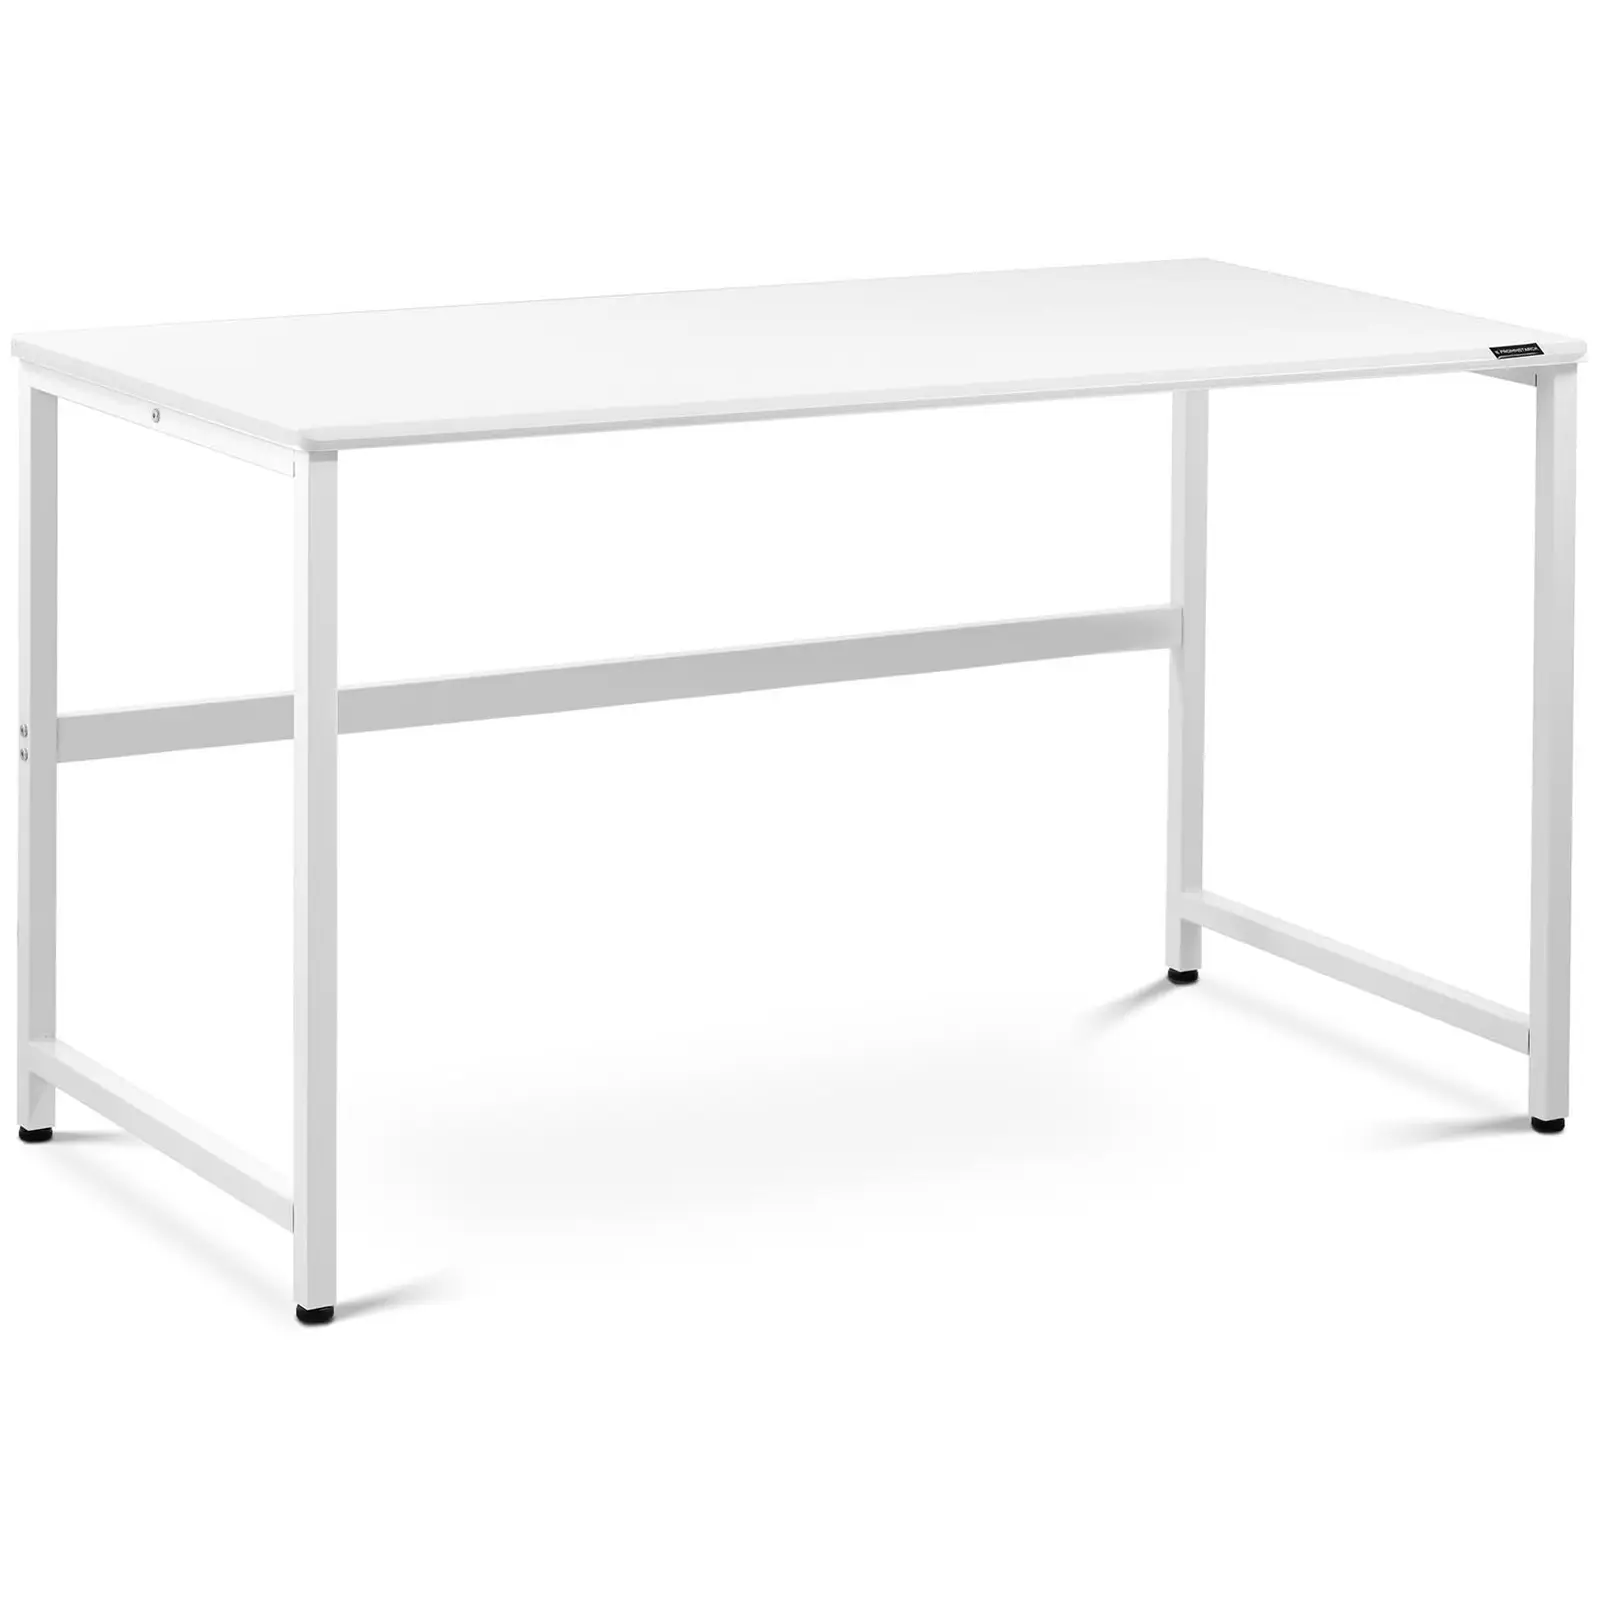 B-termék Íróasztal - 120 x 60 cm - fehér 